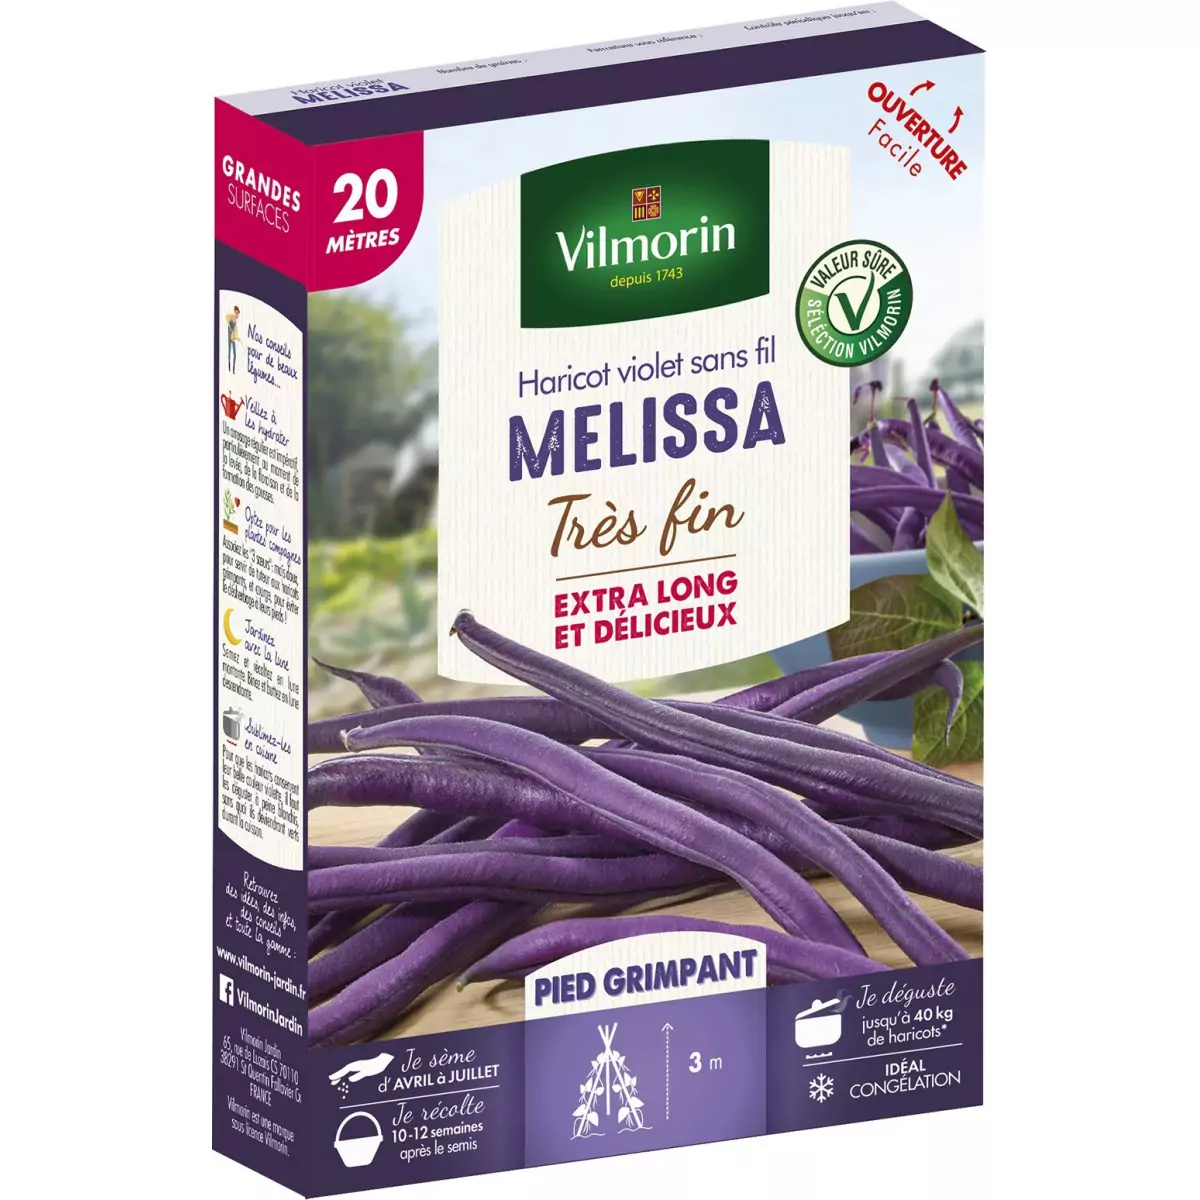 Purple violet bean Melissa very fine 20 meters